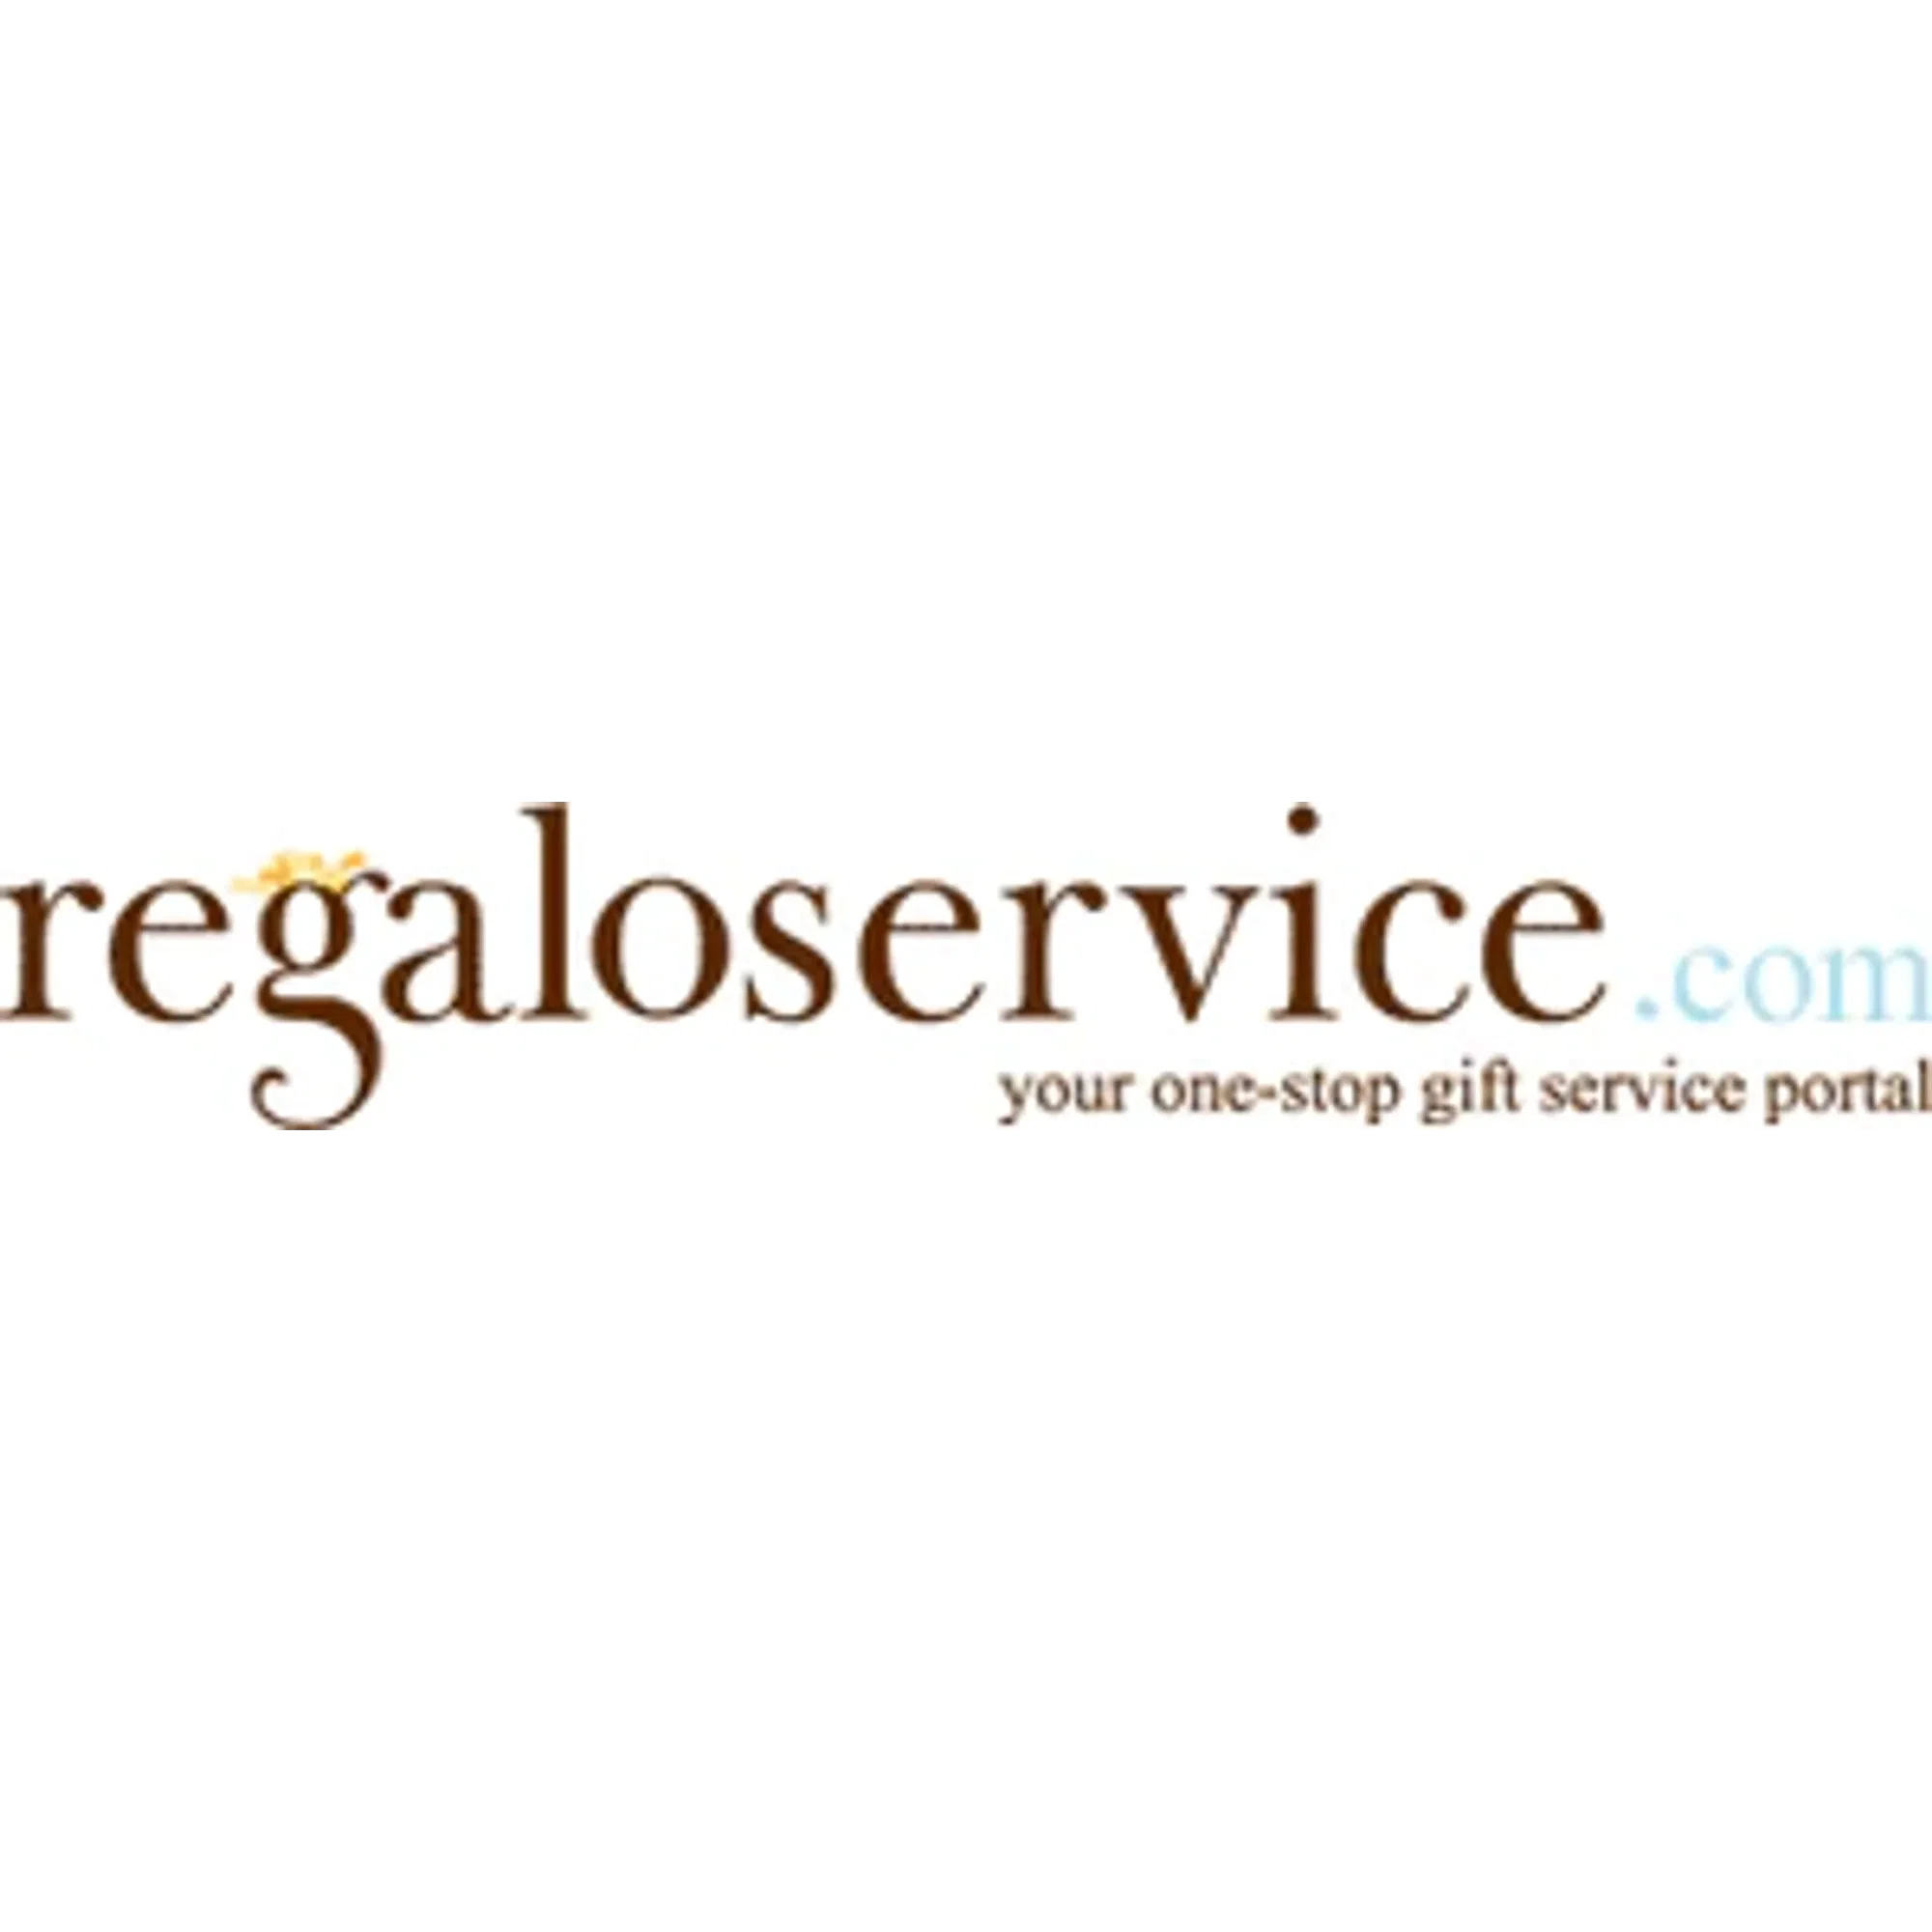 regaloservice.com logo